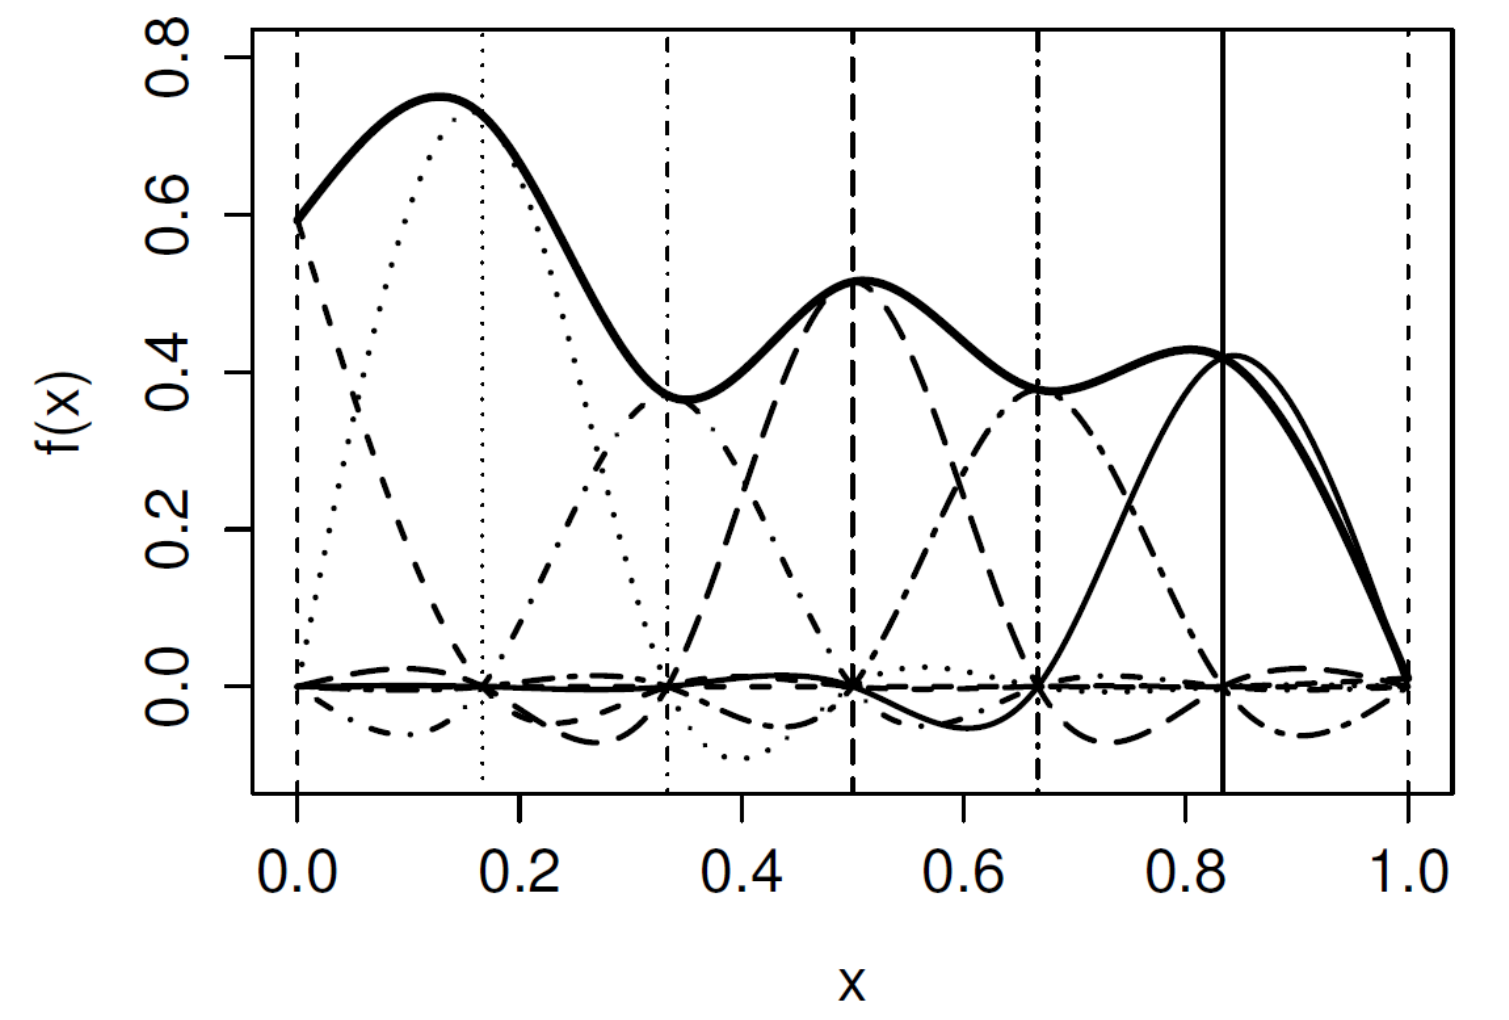 Construcción de un spline cúbico. La curva suave (línea contínua gruesa) es la suma de las 5 funciones basis (líneas finas). Las líneas verticales muestran los nodos equiespaciados. Extraído de Wood (2017).